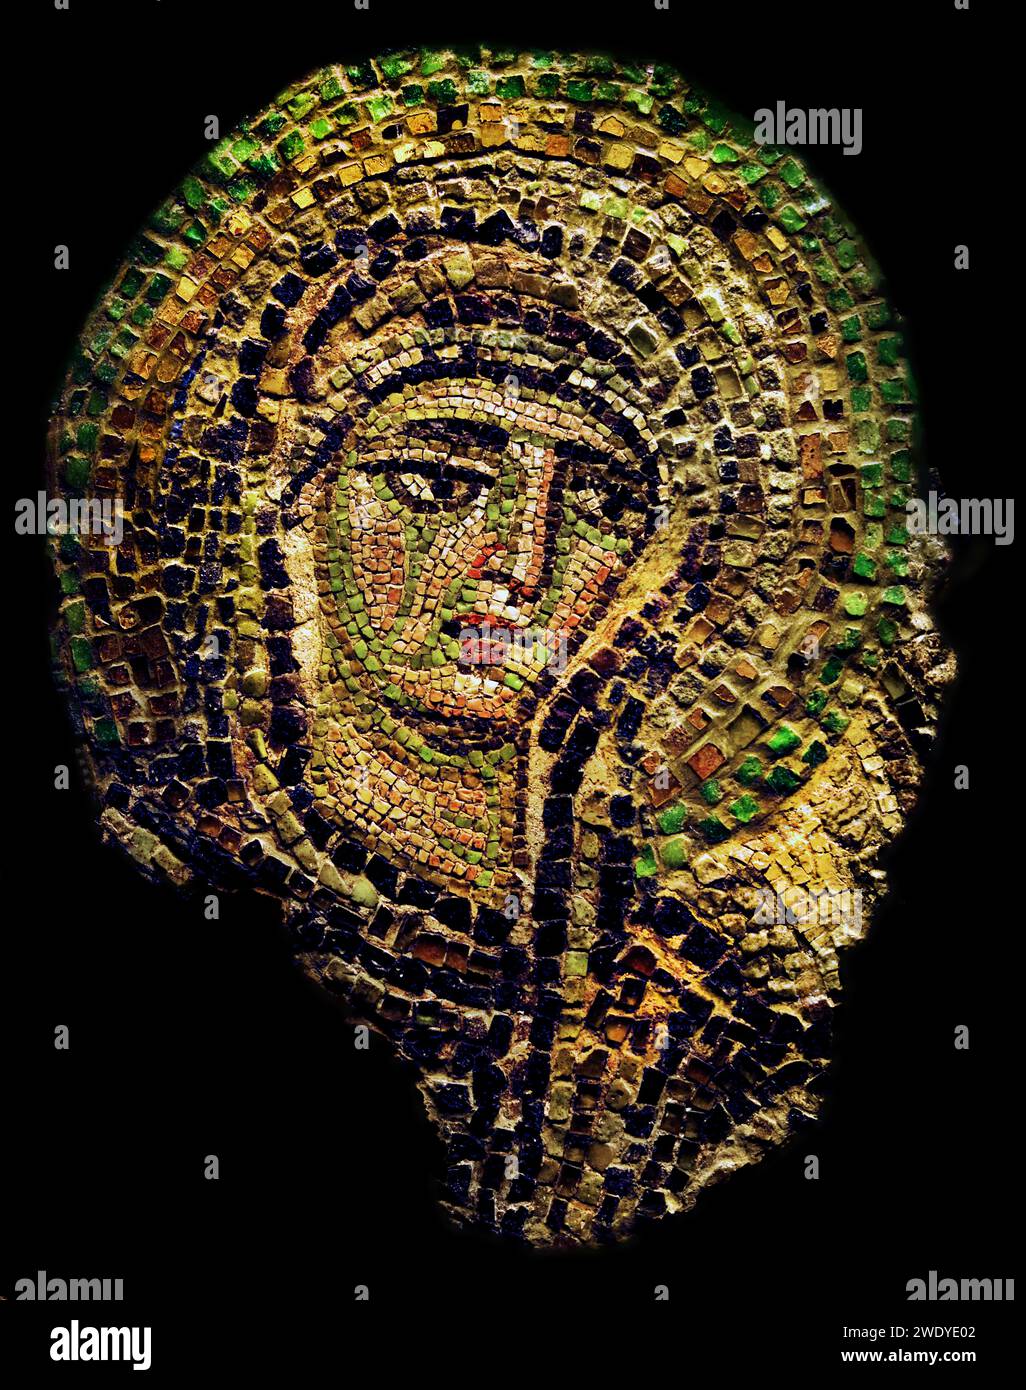 Partie d'une mosaïque avec la Vierge du monastère des Studios à Constantinople fin du 10e siècle Musée Benaki Athènes Grèce. Banque D'Images